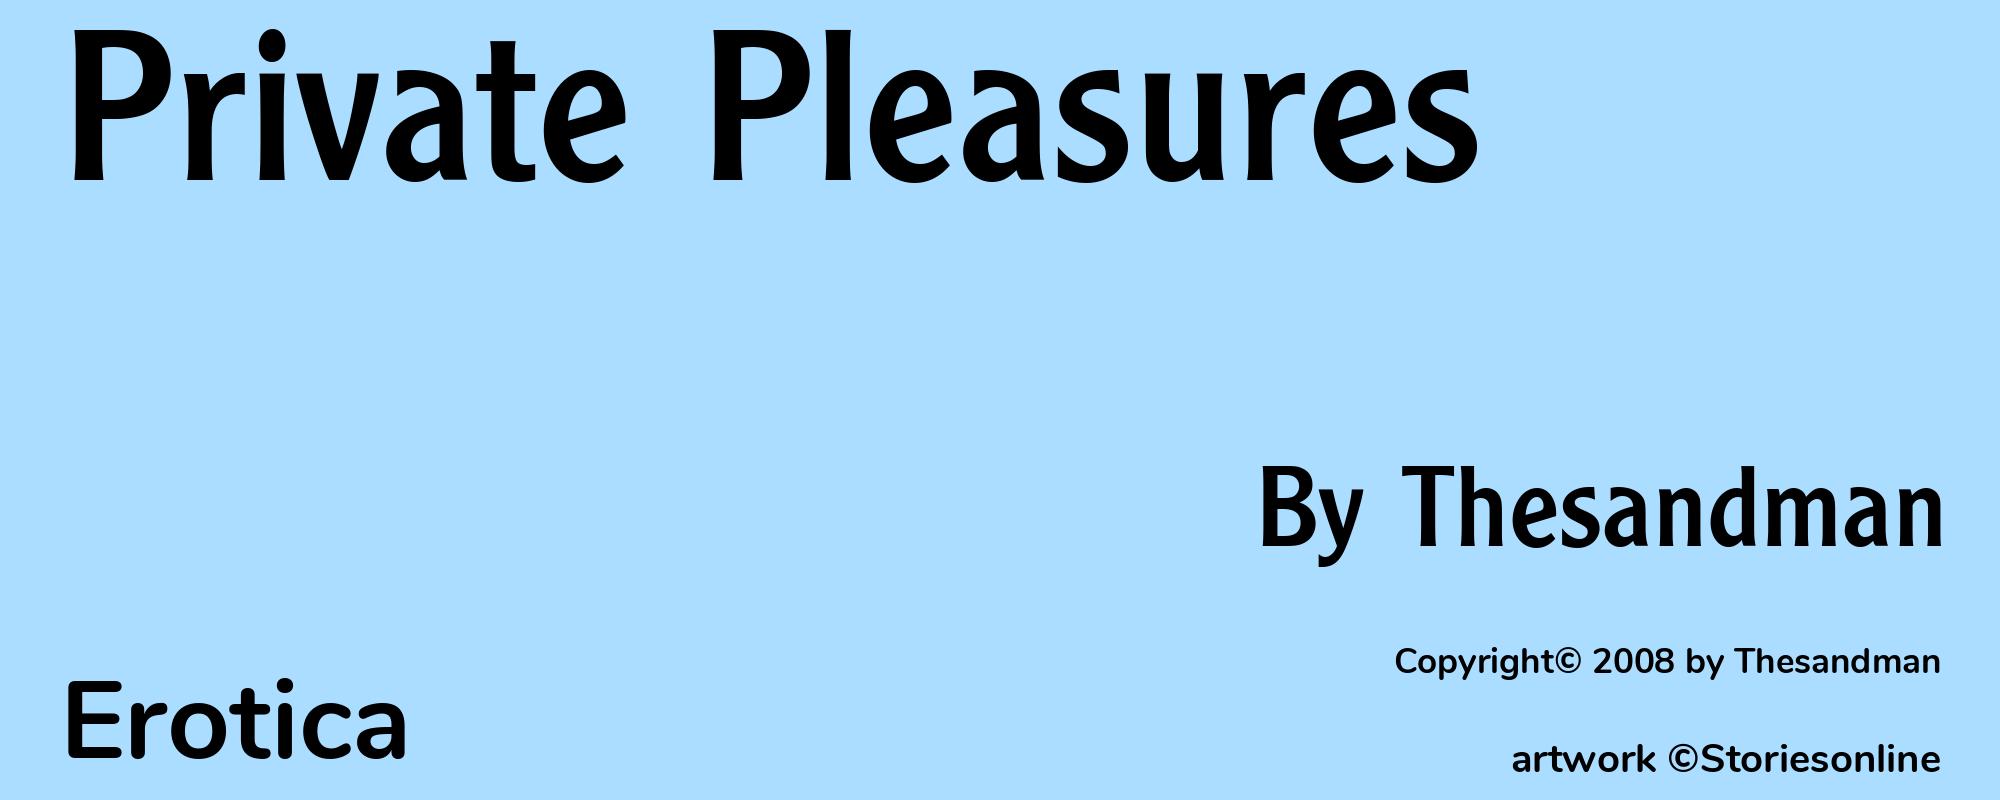 Private Pleasures - Cover